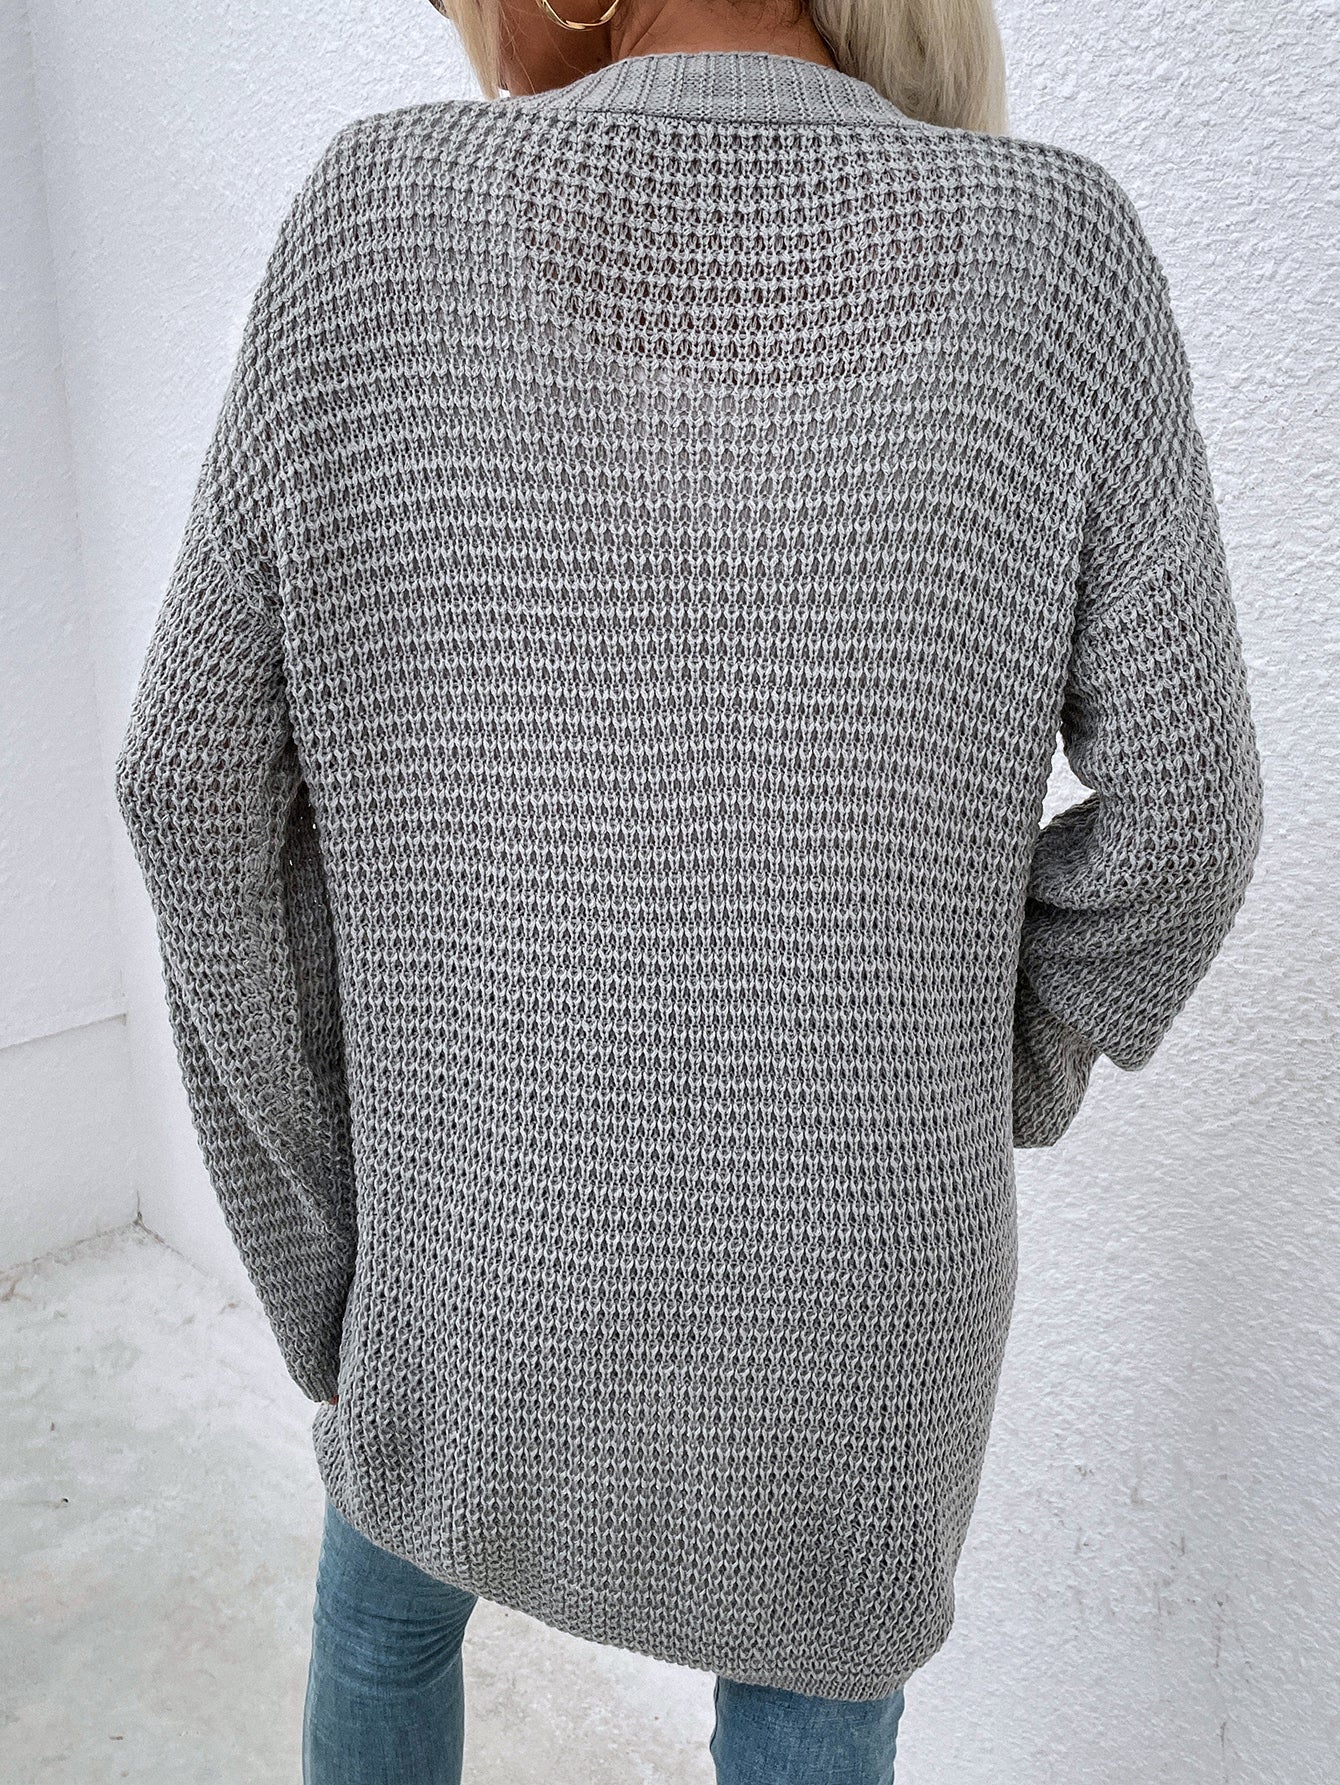 Gray cardigan sweater Sai Feel